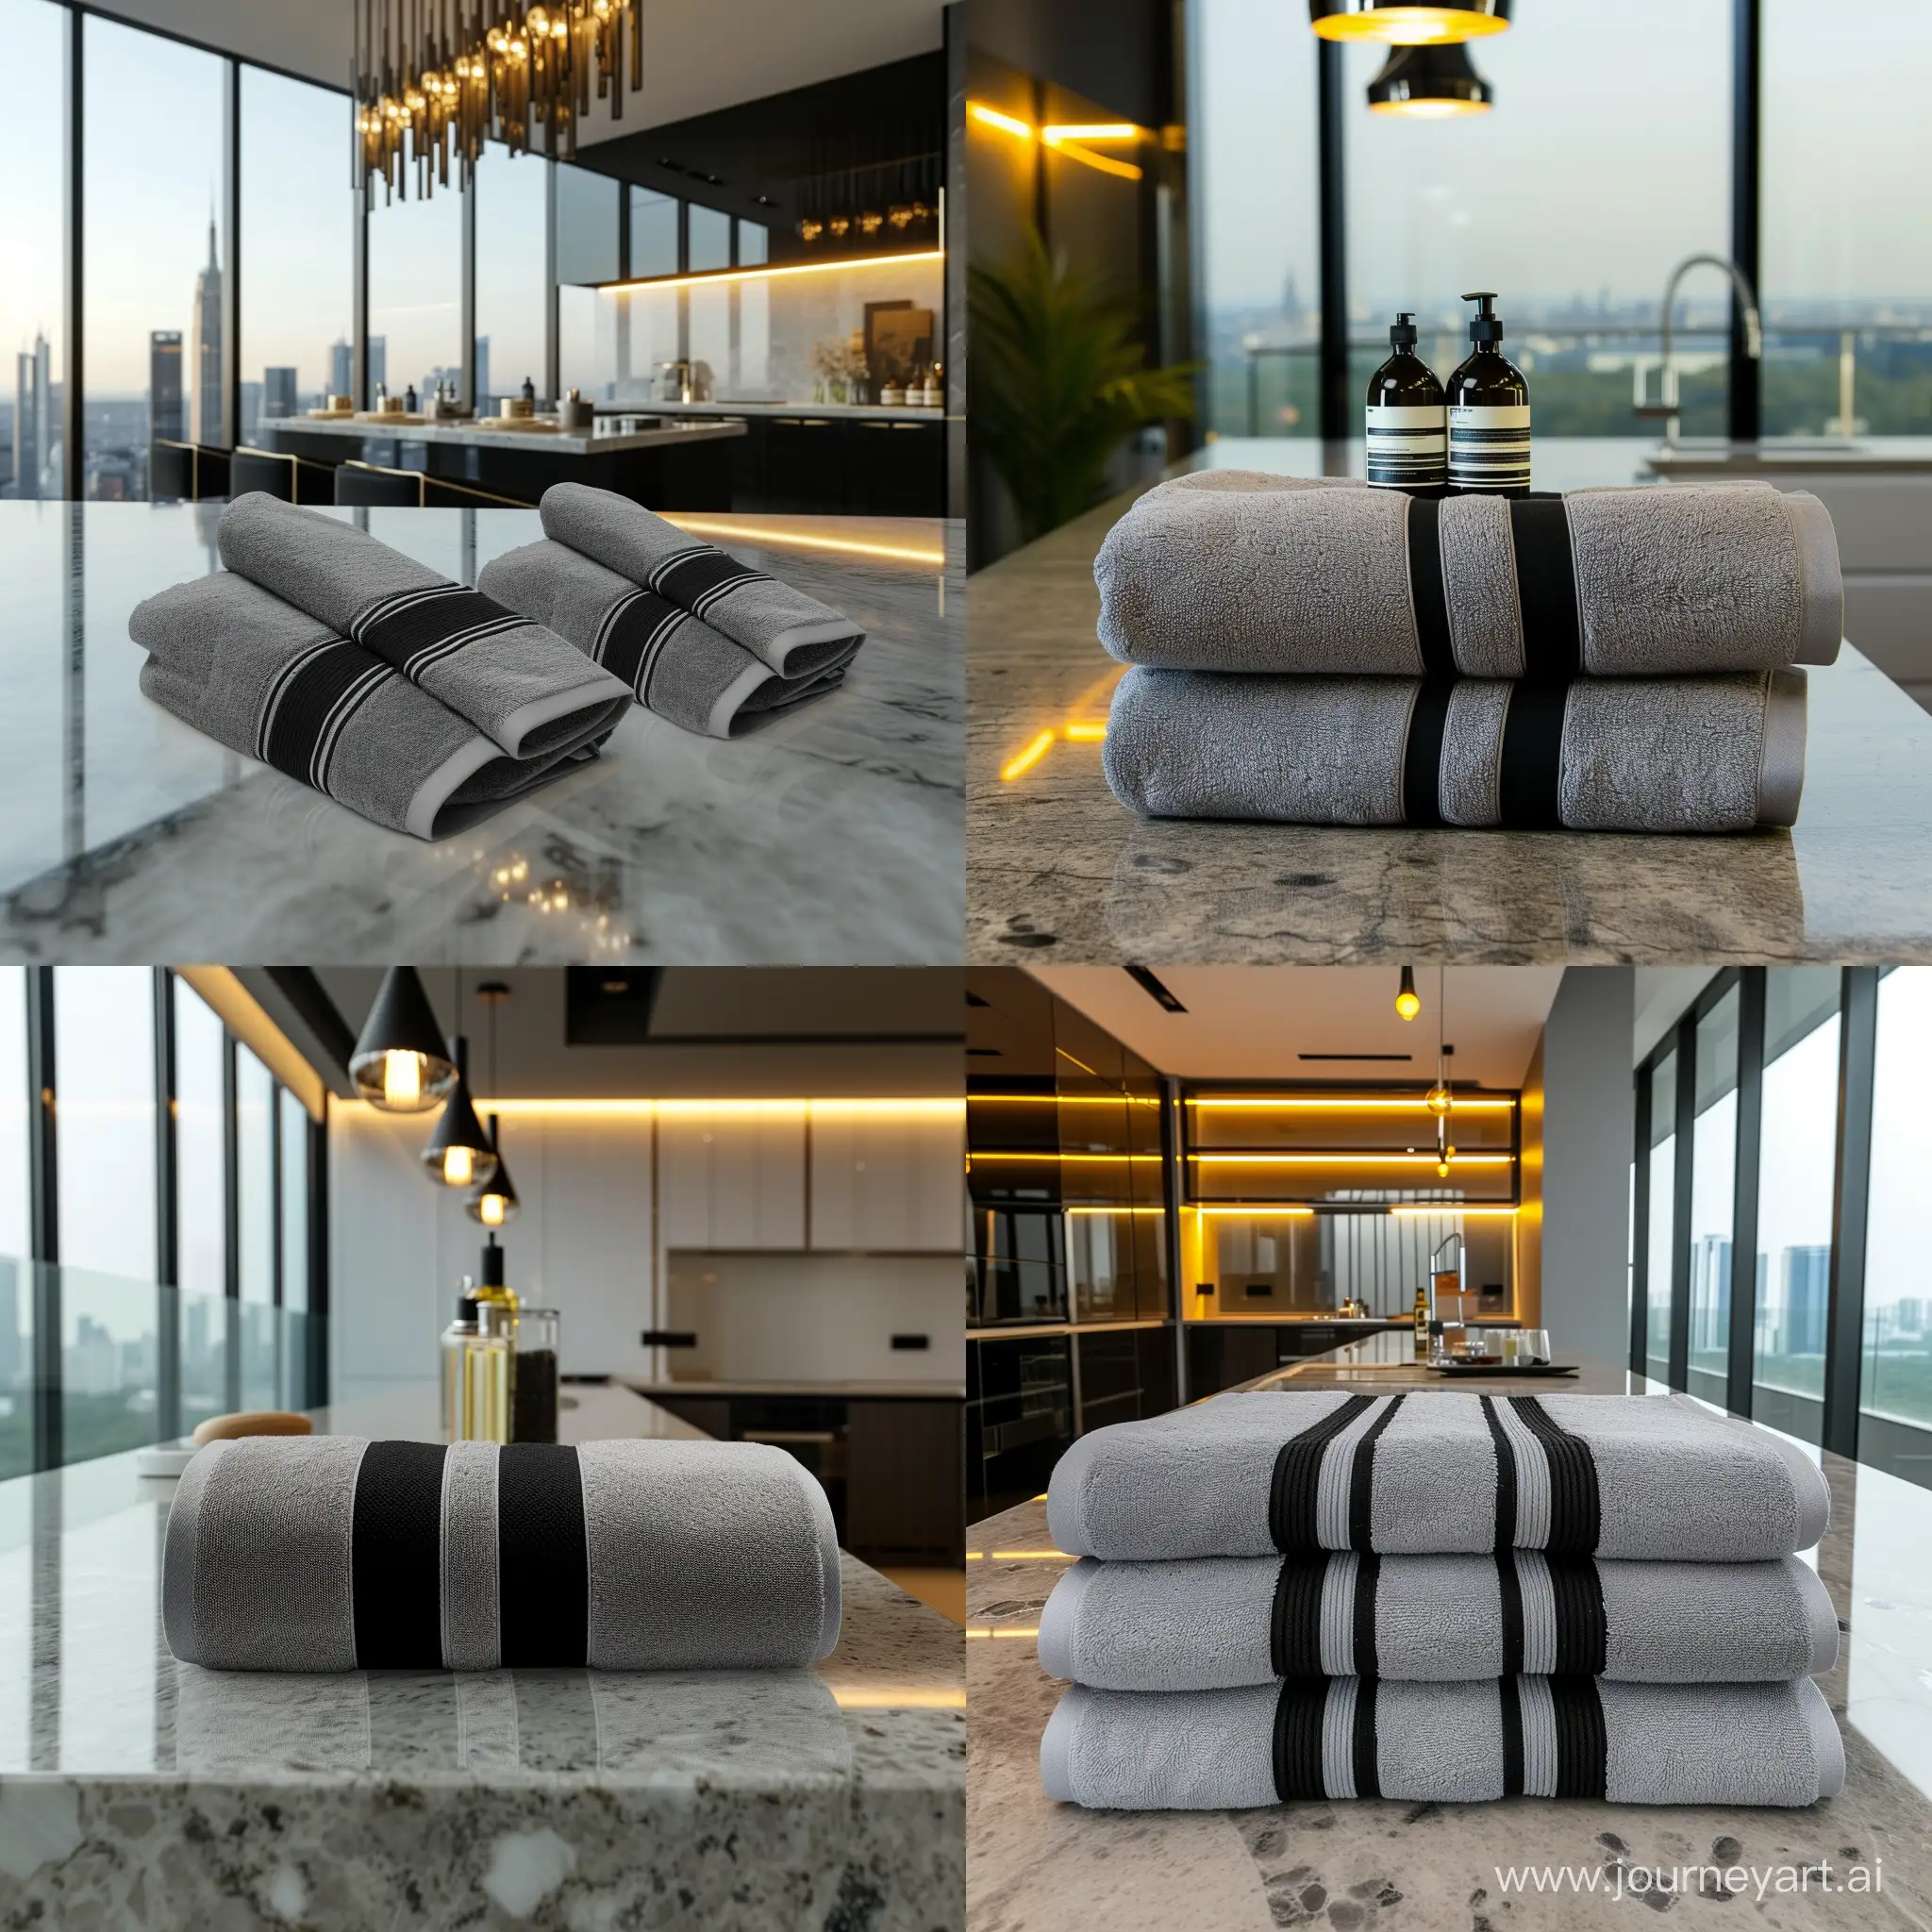 банные полотенца серого цвета с черными полосками по контуру в дорогой квартире на стильной кухне с панорамными окнами и дорогим освещением